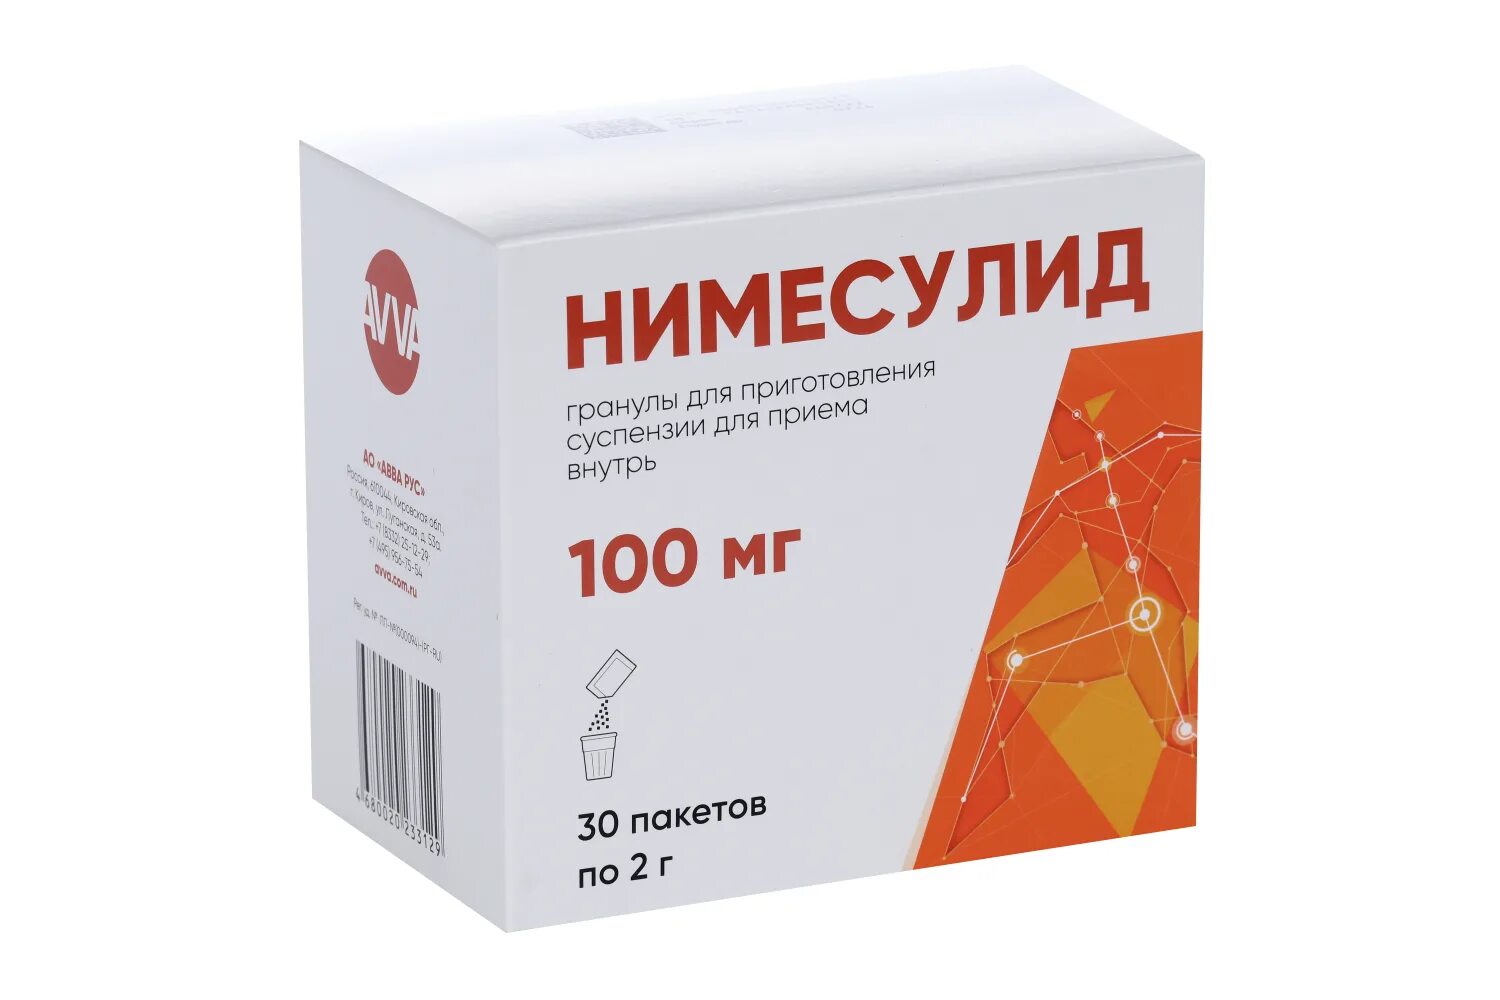 Нимесулид 100 мг от чего помогает взрослым. Нимесулид 100 мг. Нимесулид гранулы. Нимесулид гранулы для приготовления суспензии для приема внутрь 100 мг. Нимесулид таблетки 100 мг.